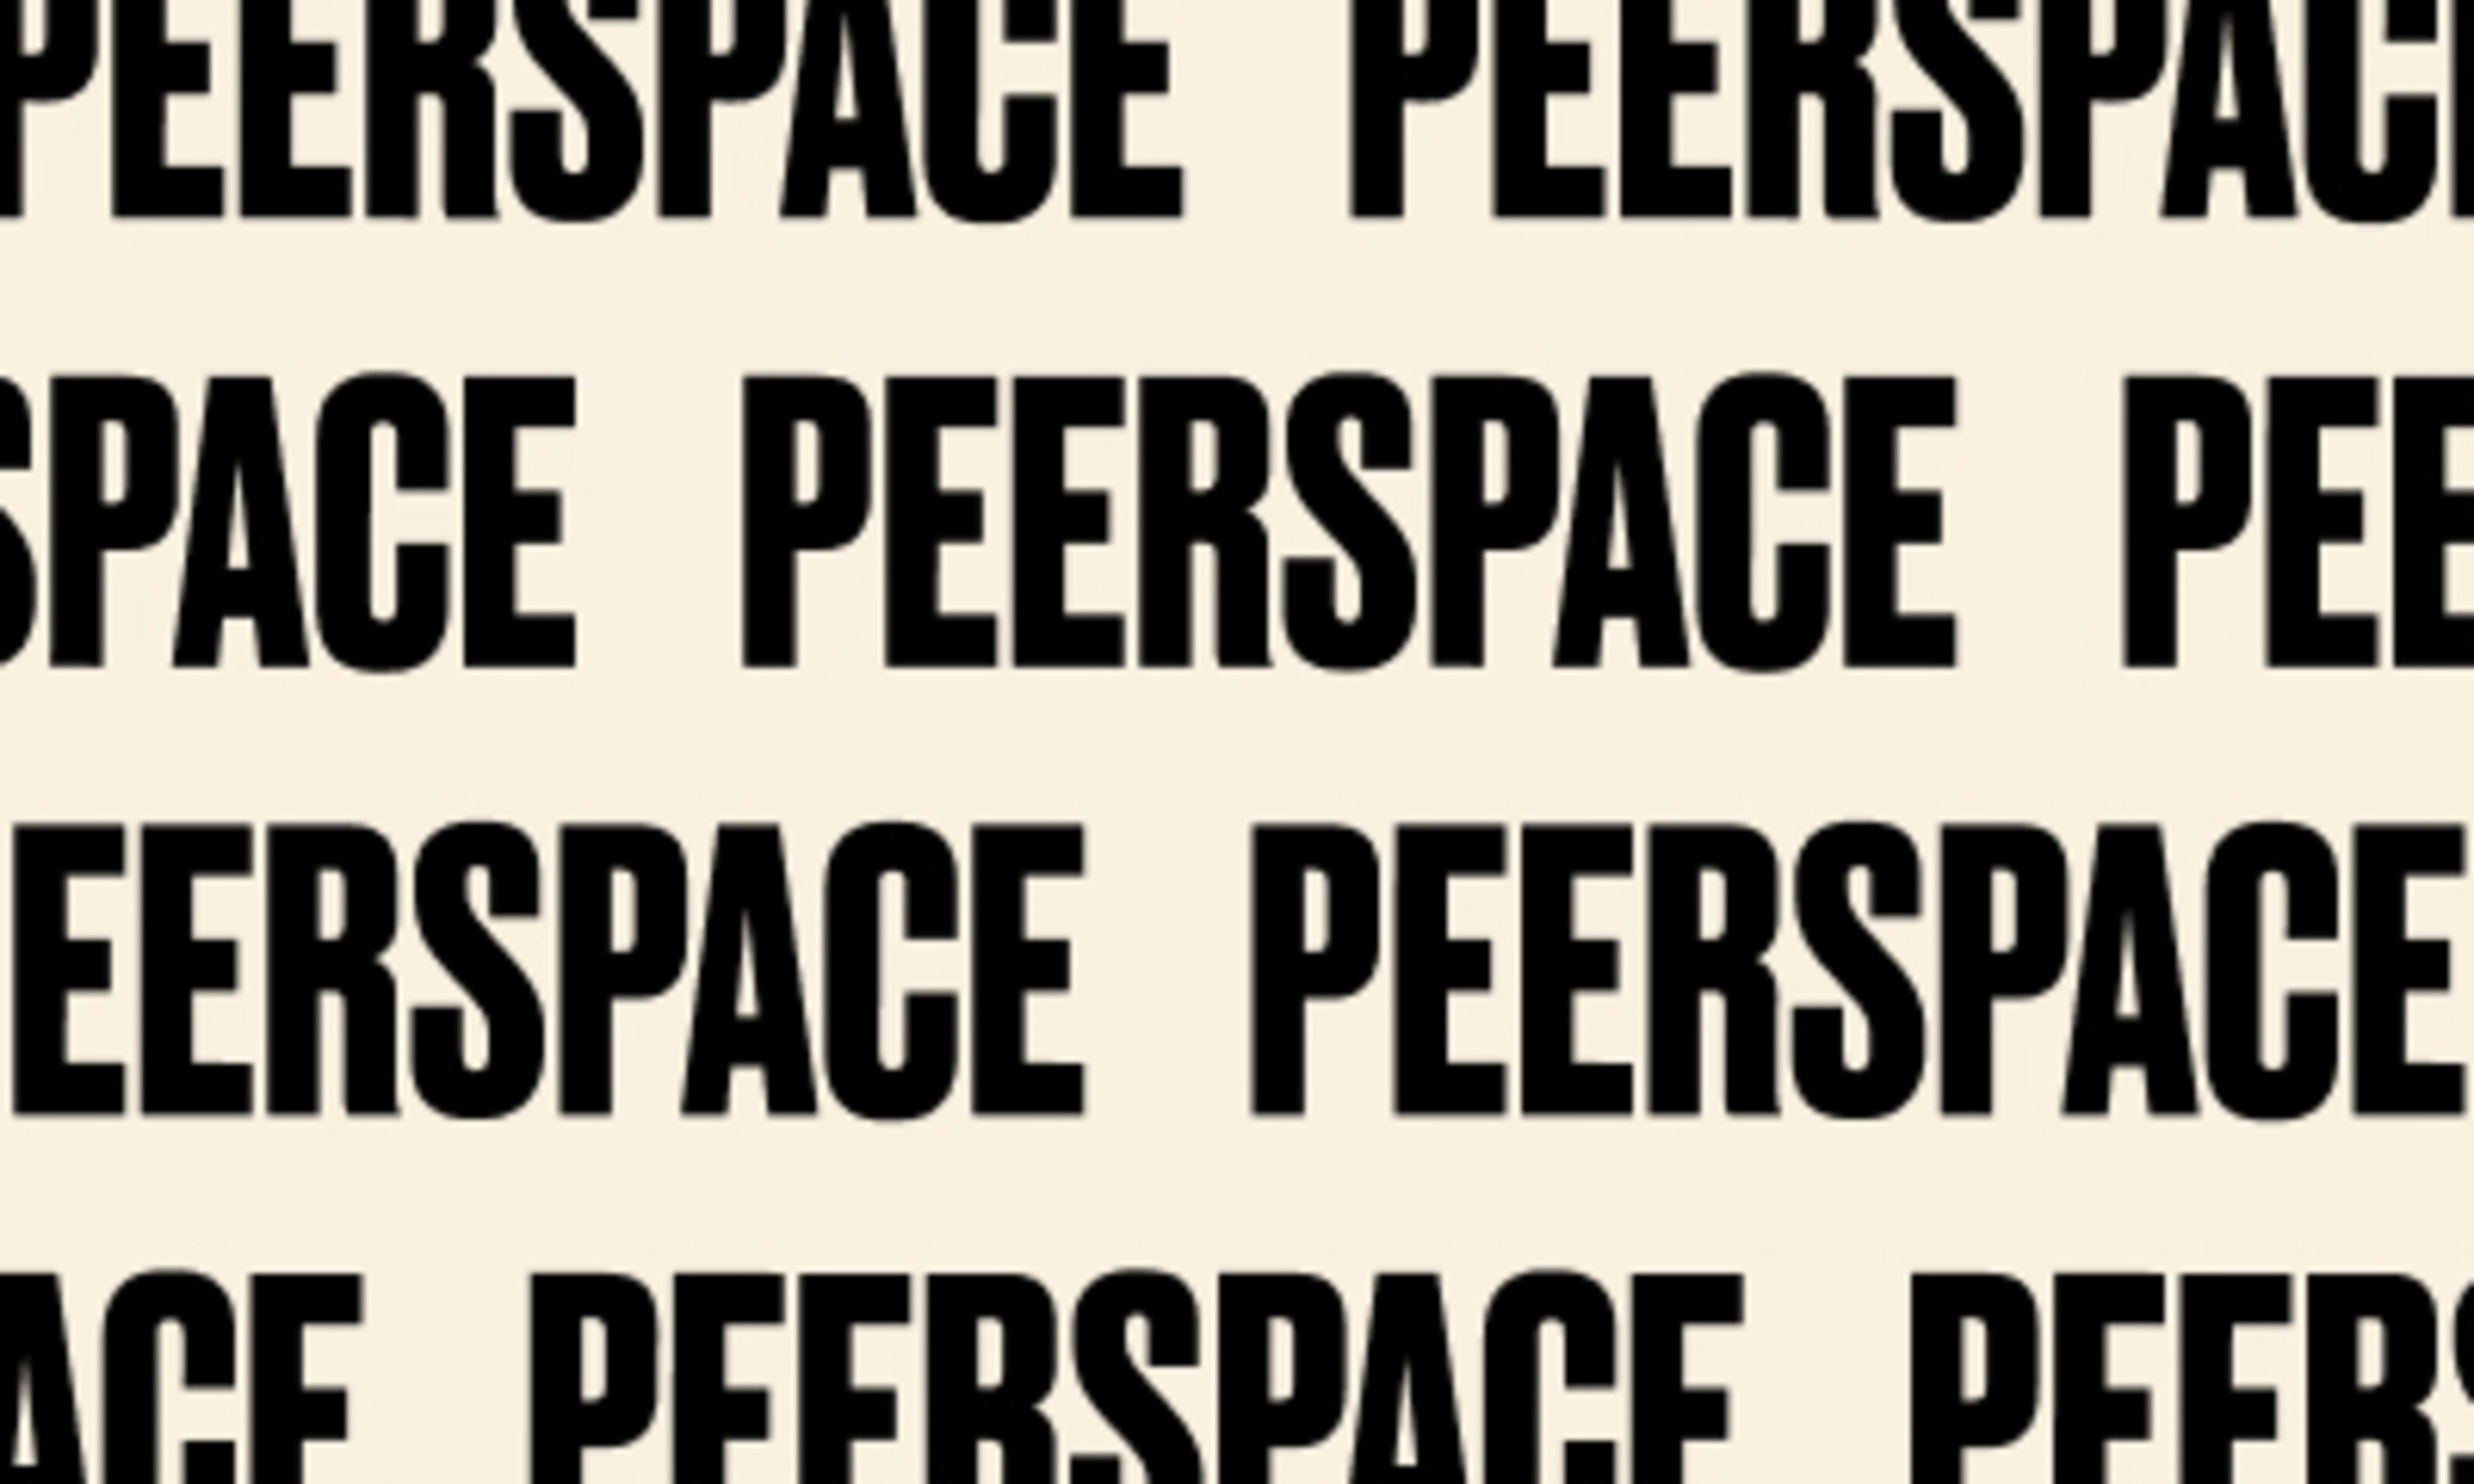 El nuevo Peerspace: donde comienza lo extraordinario